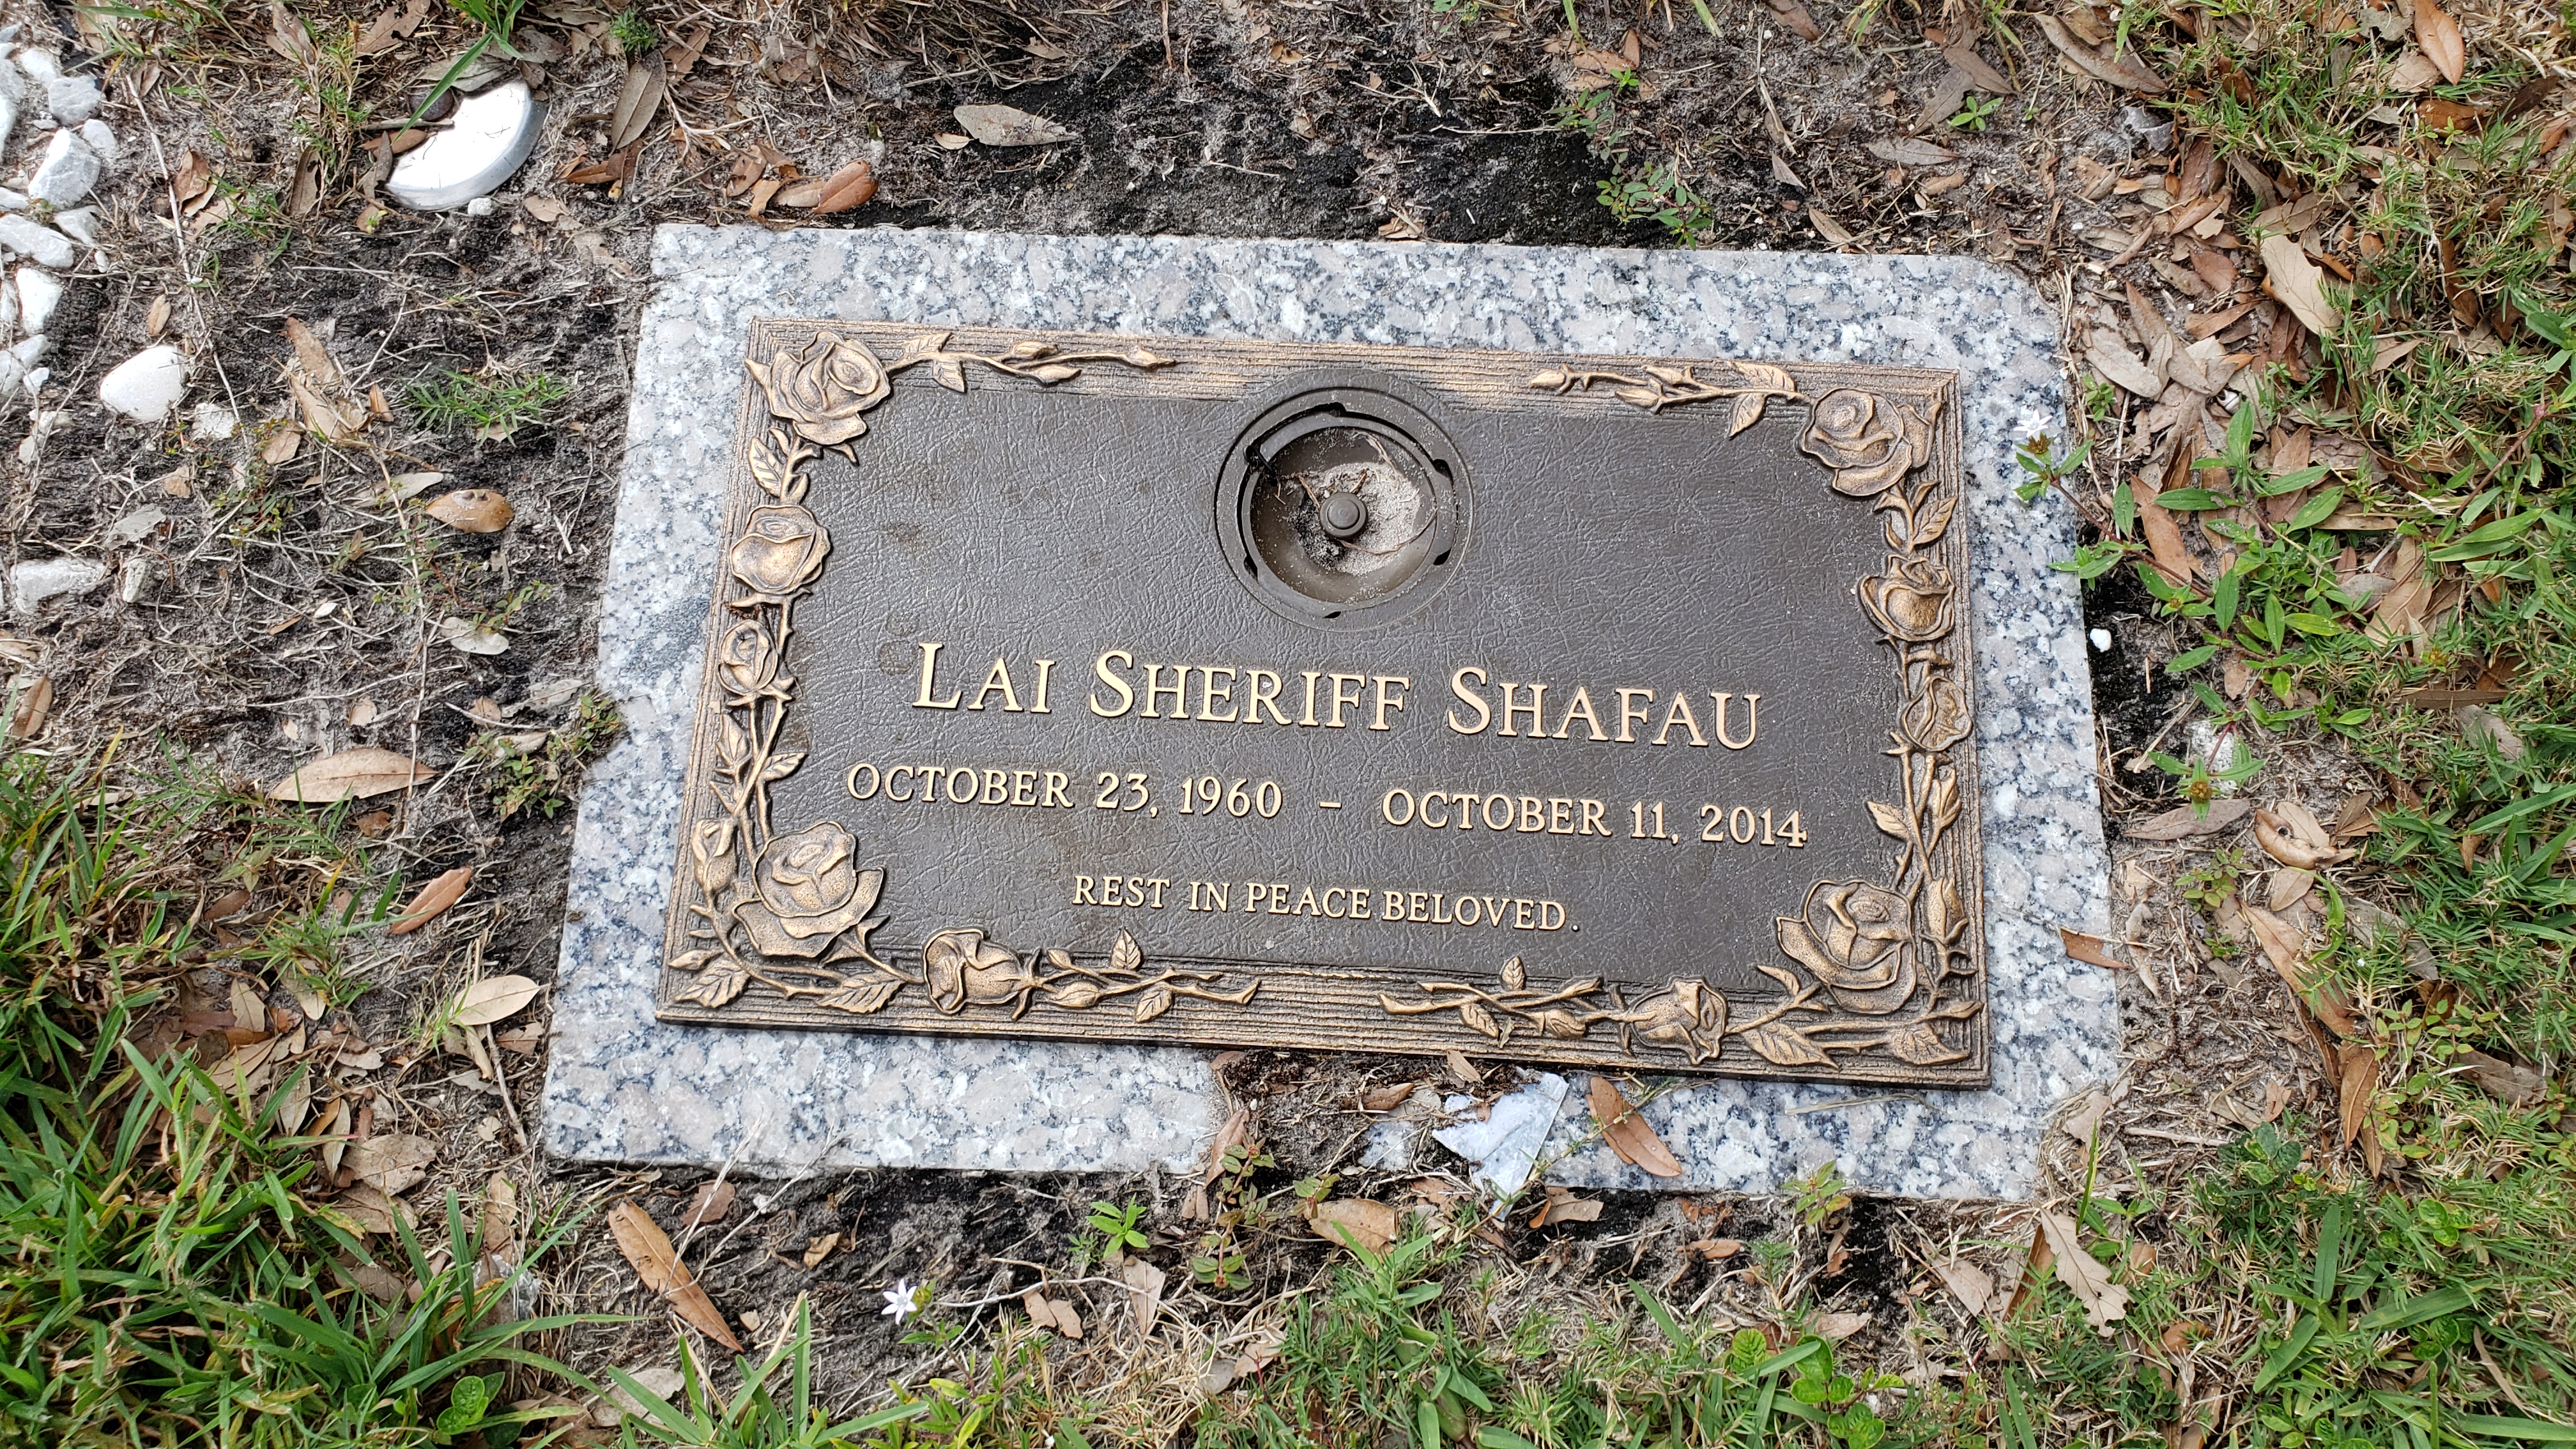 Lai Sheriff Shafau